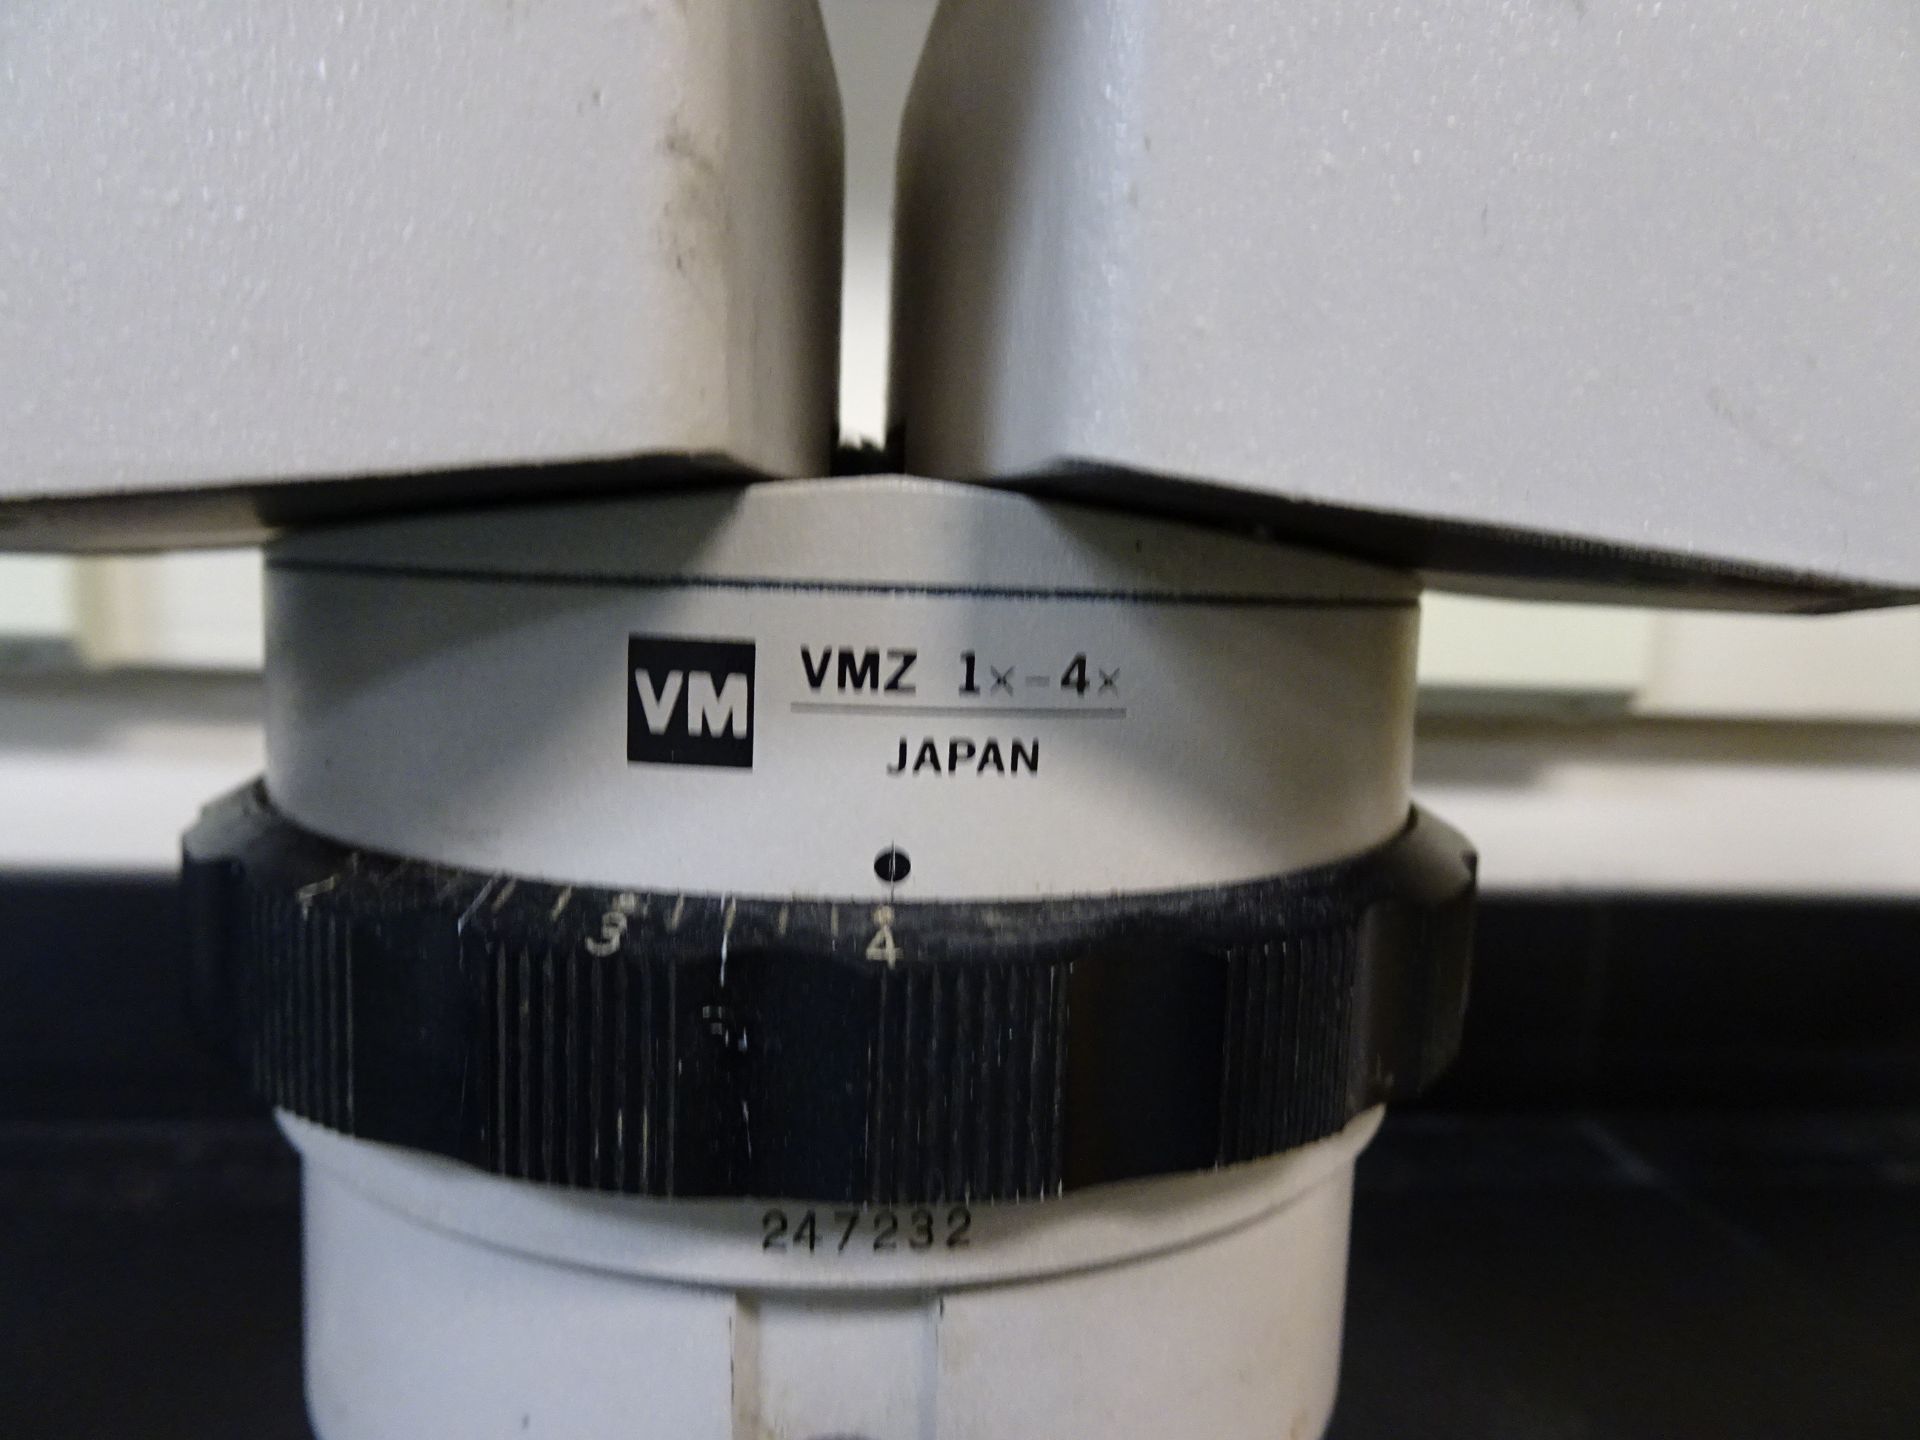 Olympus VMZ 1x-4x Stereo Microscope w/ (2) 10x Eyepieces - Image 2 of 2